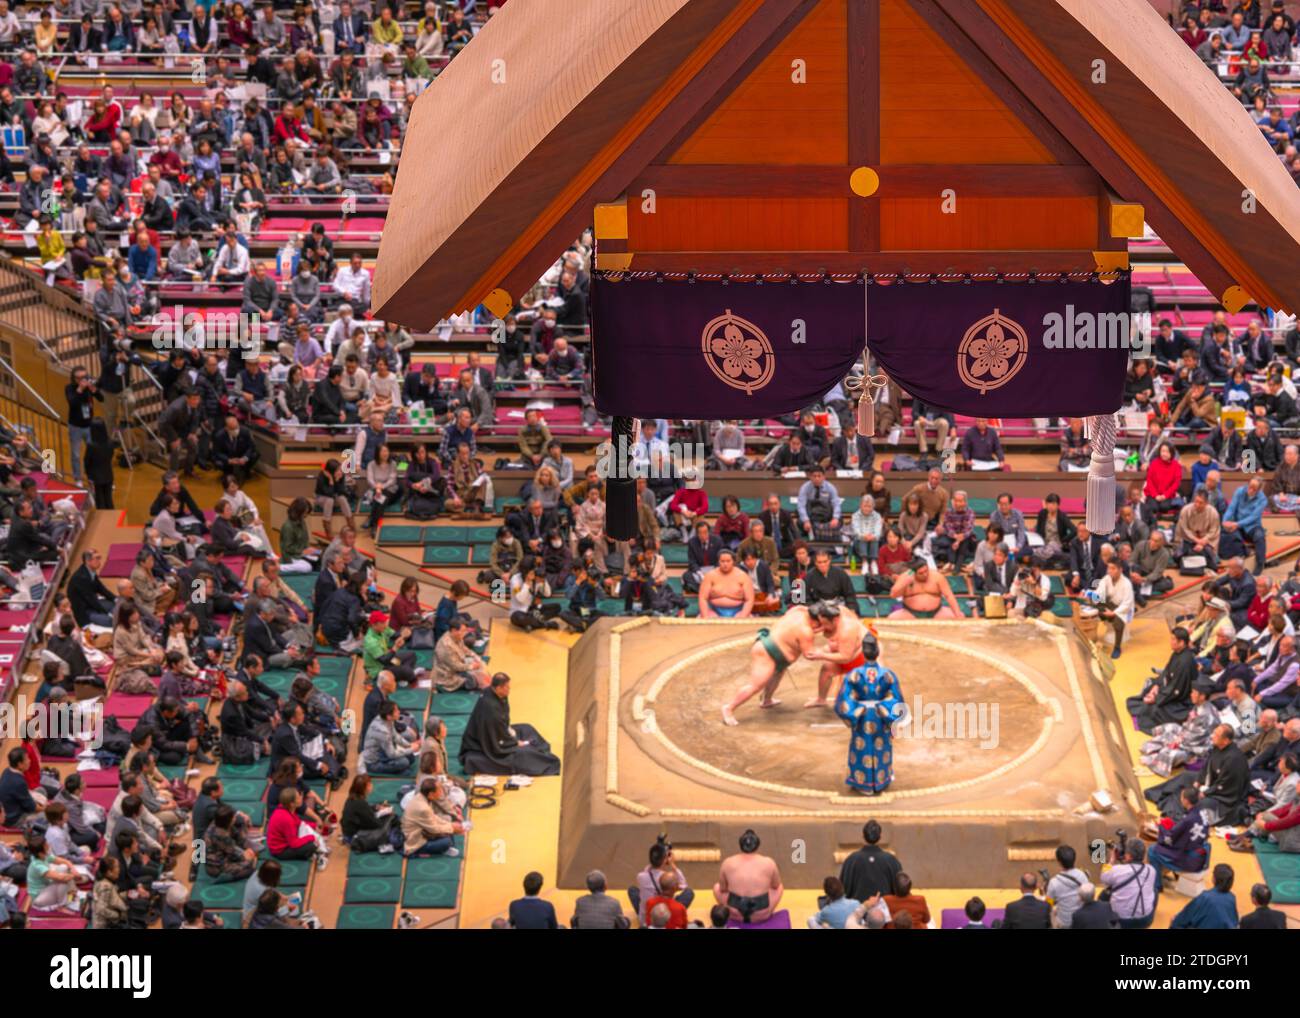 tokio, ryogoku - 14. januar 2023: Japanisches Dohyō wird von Sumo-Ringen-Turnieren verwendet, die mit einem Kreis von Reistrohballen auf einer quadratischen Plattform durchgeführt werden Stockfoto